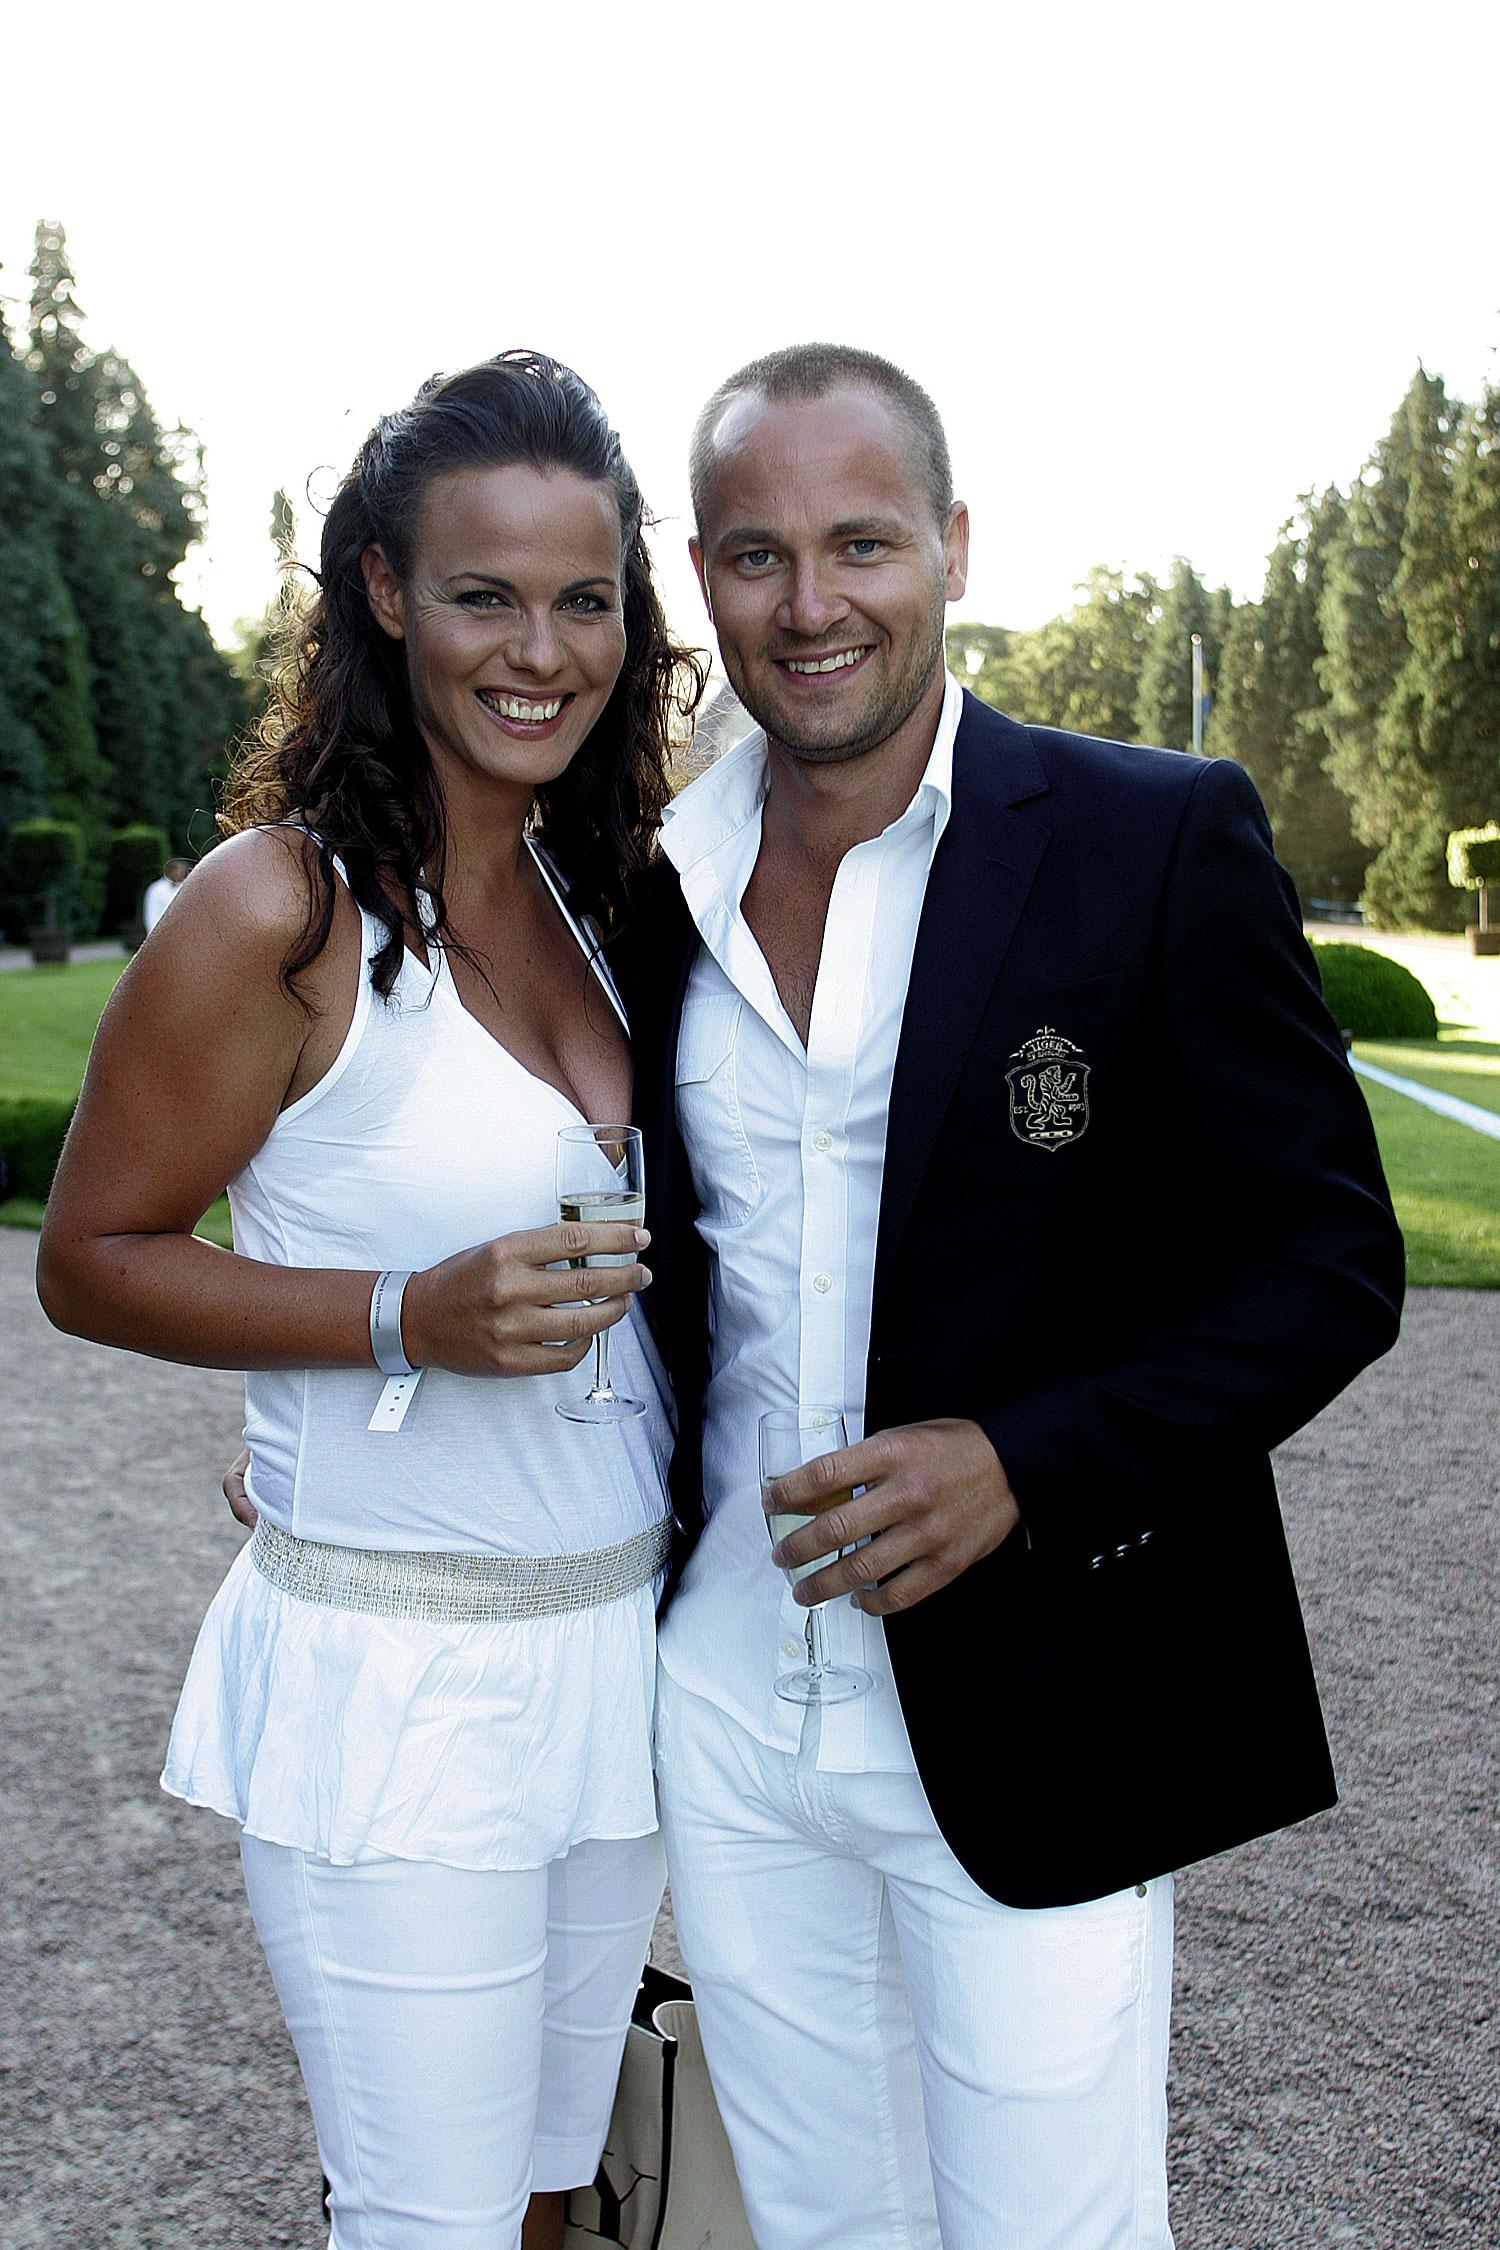 LIGGER I SKILSMÄSSA TV4-profilen Suzanne Sjögren var tidigare gift med Anders Jensen, men paret ligger nu i skilsmässa. Här ses de på tennisveckan i Båstad 2006.